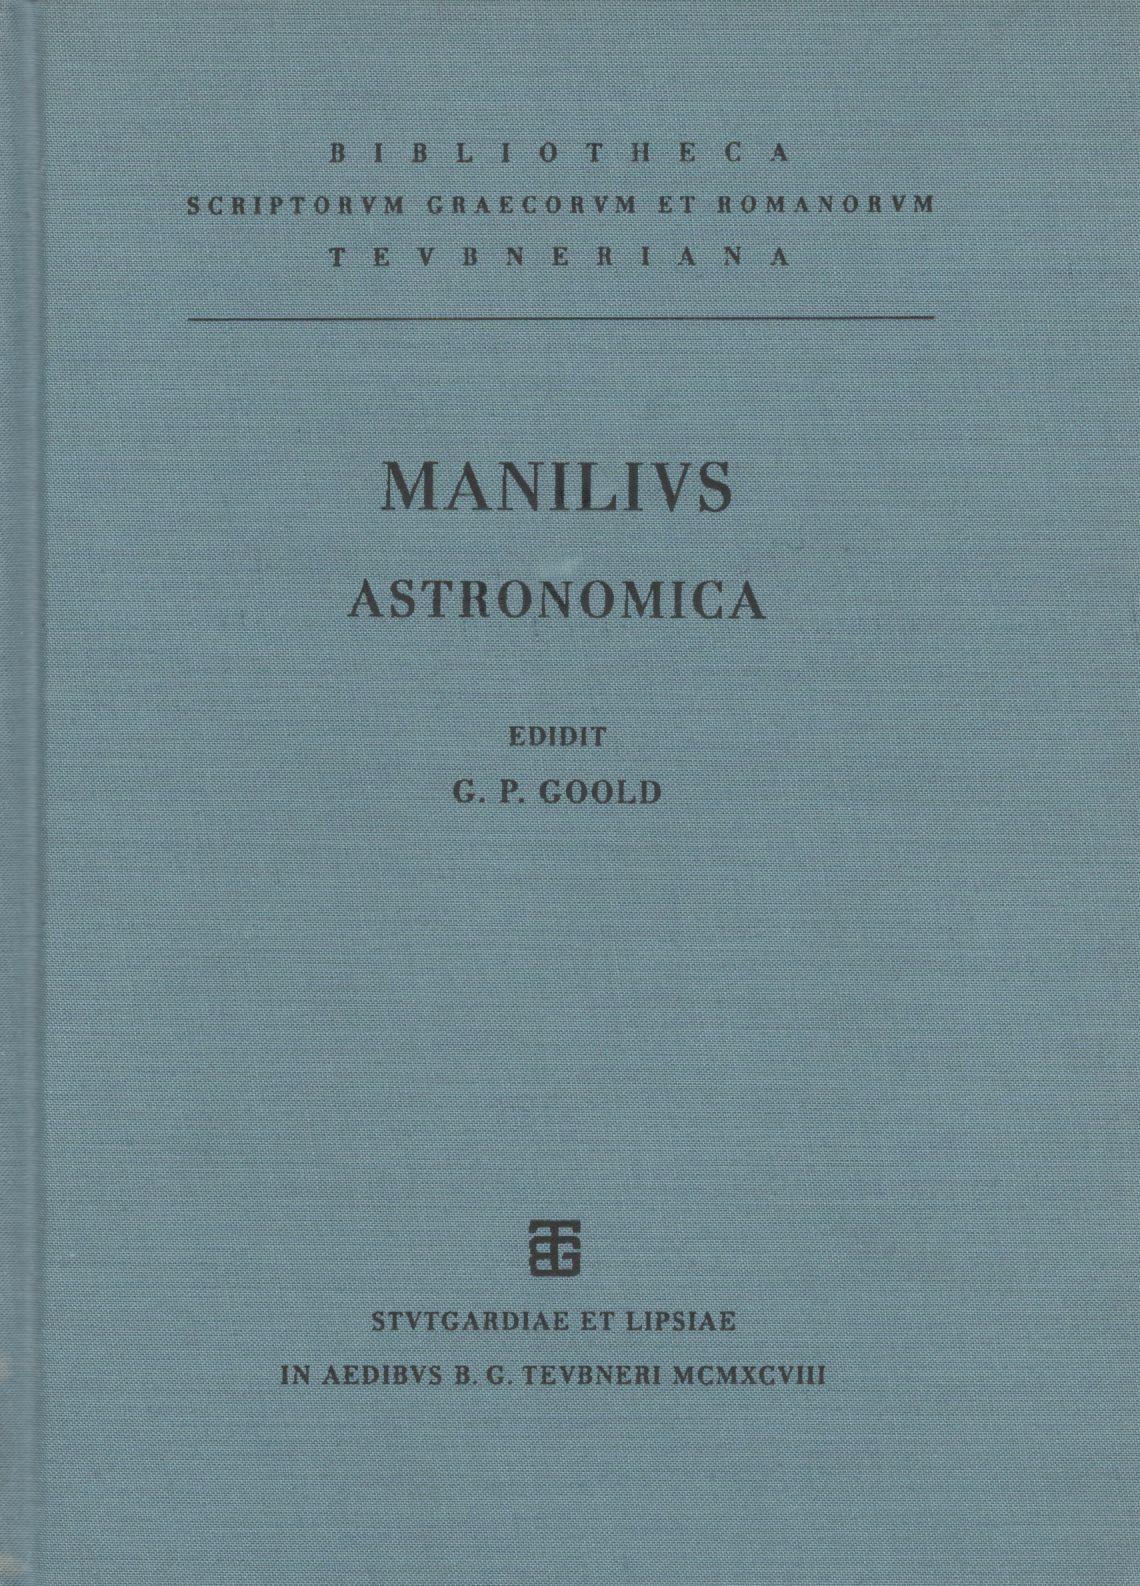 M. MANILII ASTRONOMICA